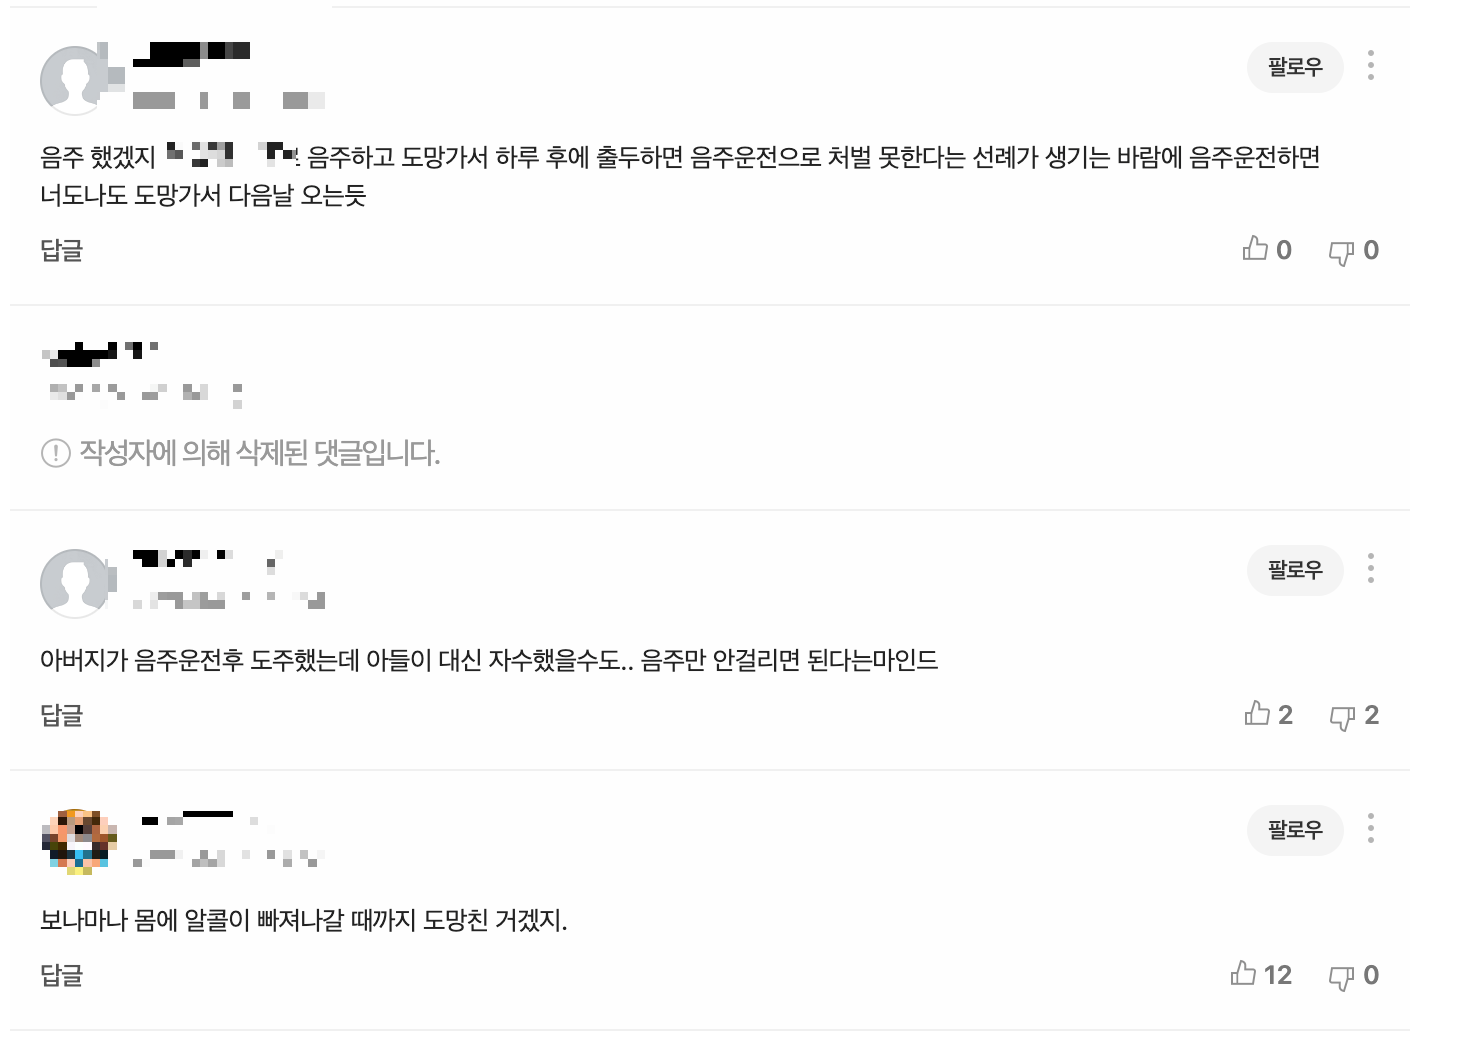 해당 사건을 담은 기사에 네티즌들이 남긴 댓글 목록 캡처화면